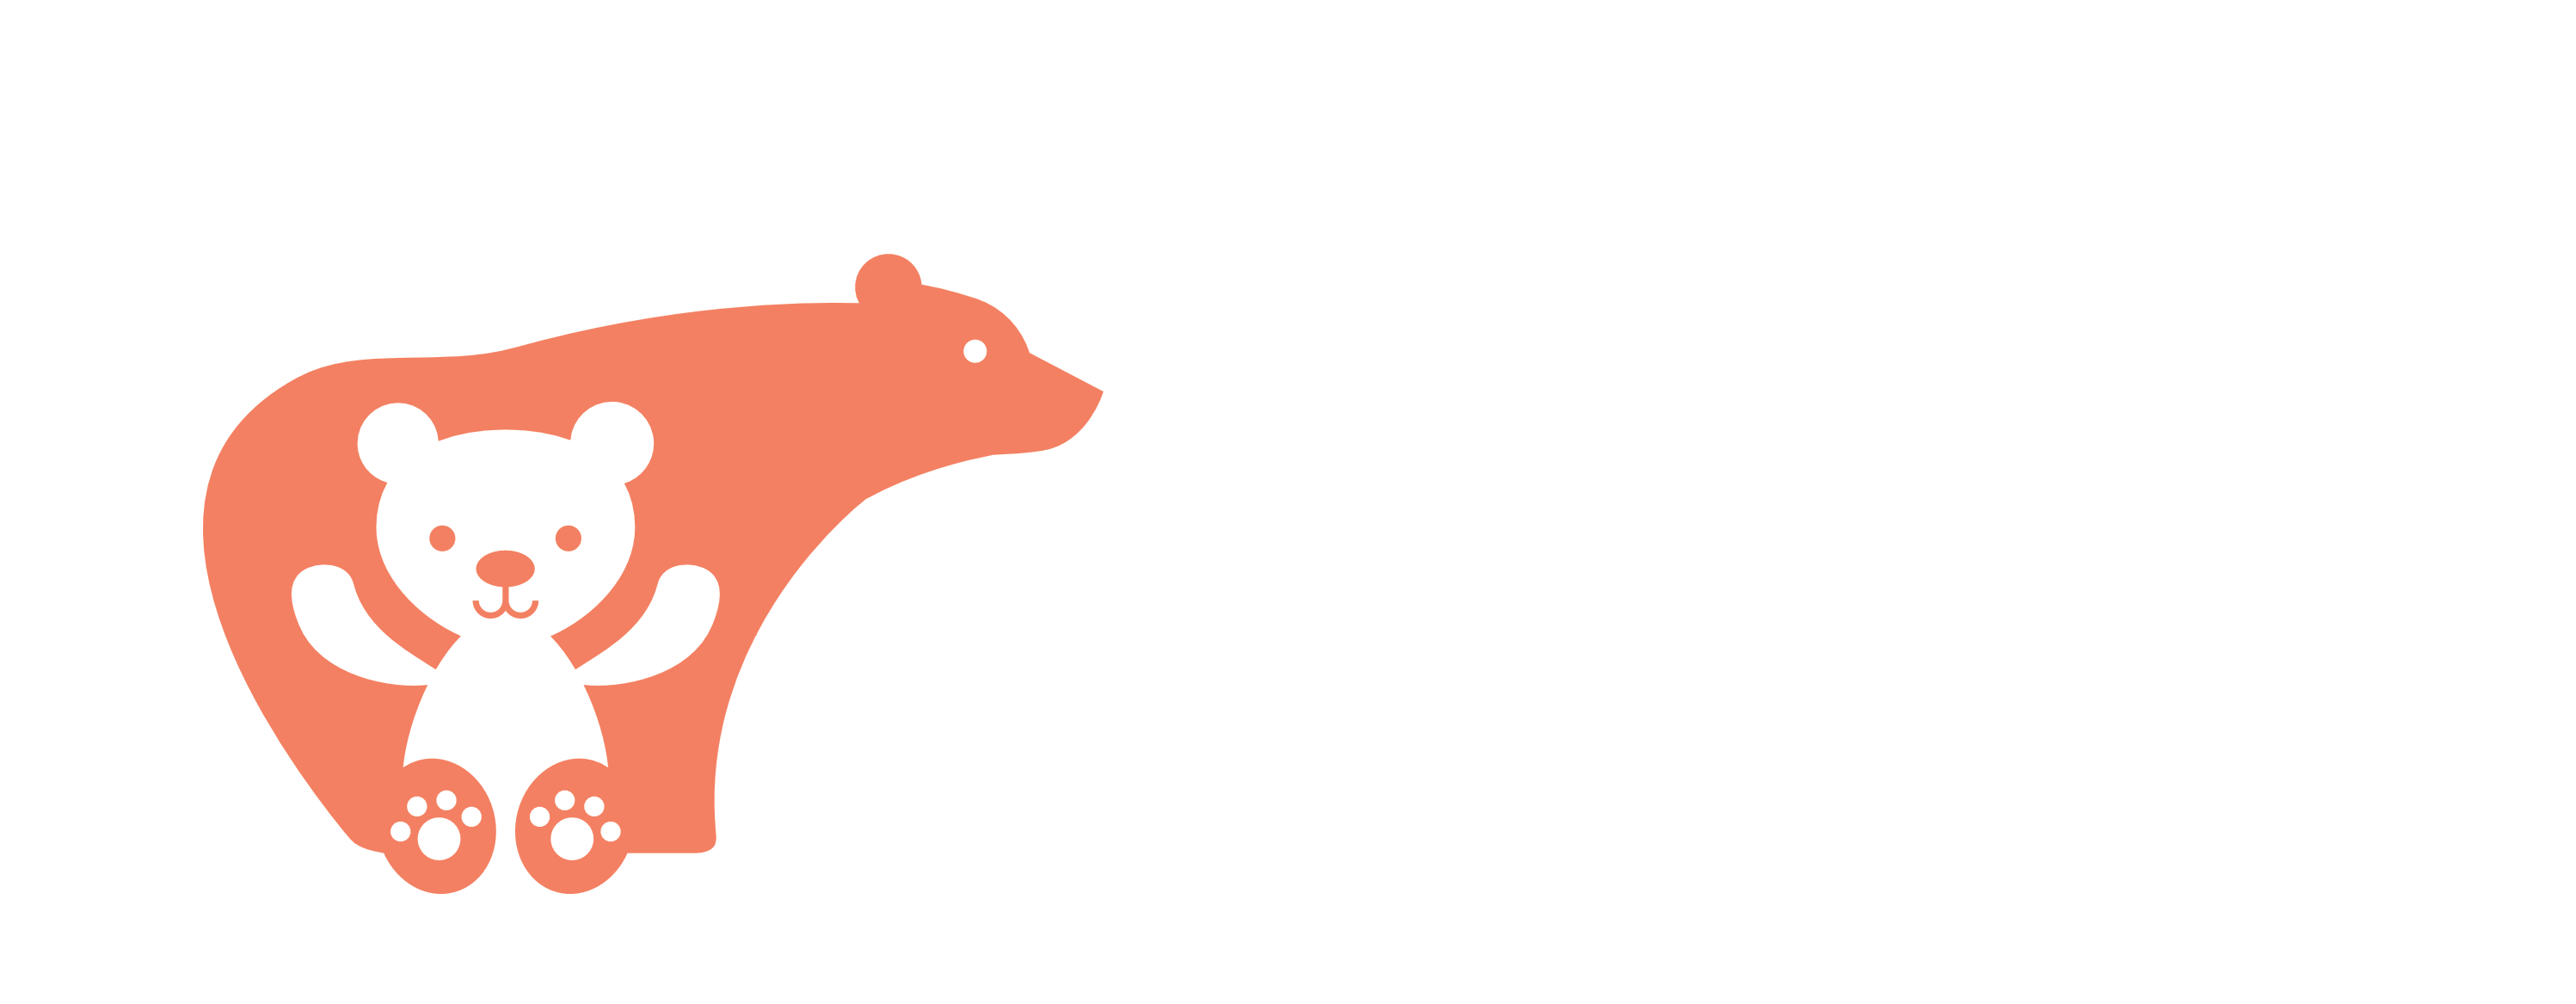 Home of Bears